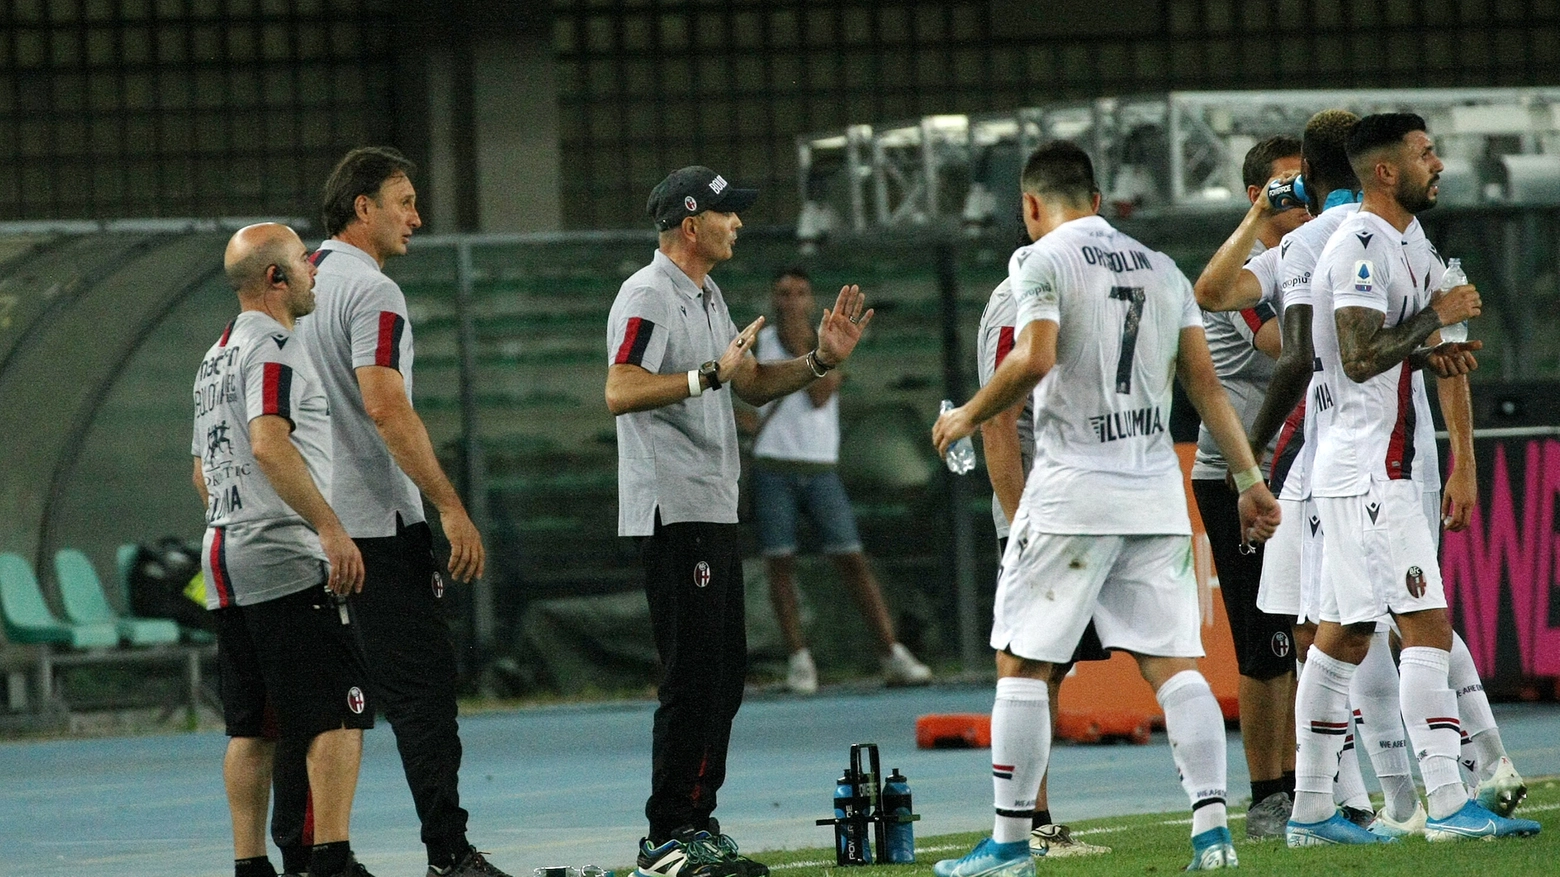 Mihajlovic parla con i suoi giocatori durante la partita a Verona (Ansa)